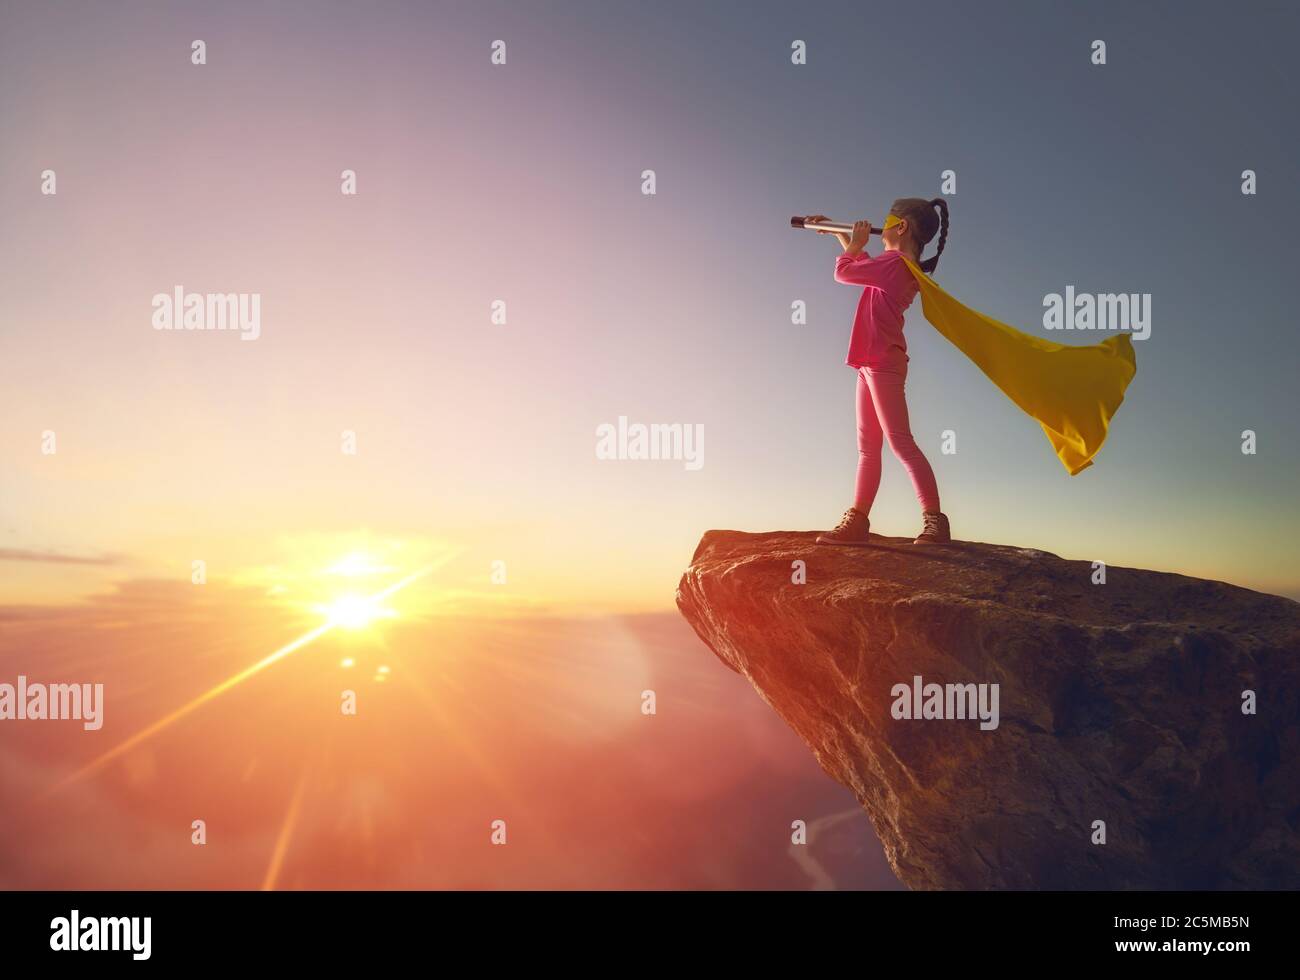 Kleines Kind Mädchen ist Superheld spielen. Kind auf dem Hintergrund des Sonnenuntergangs Himmel. Mädchen Power Konzept Stockfoto